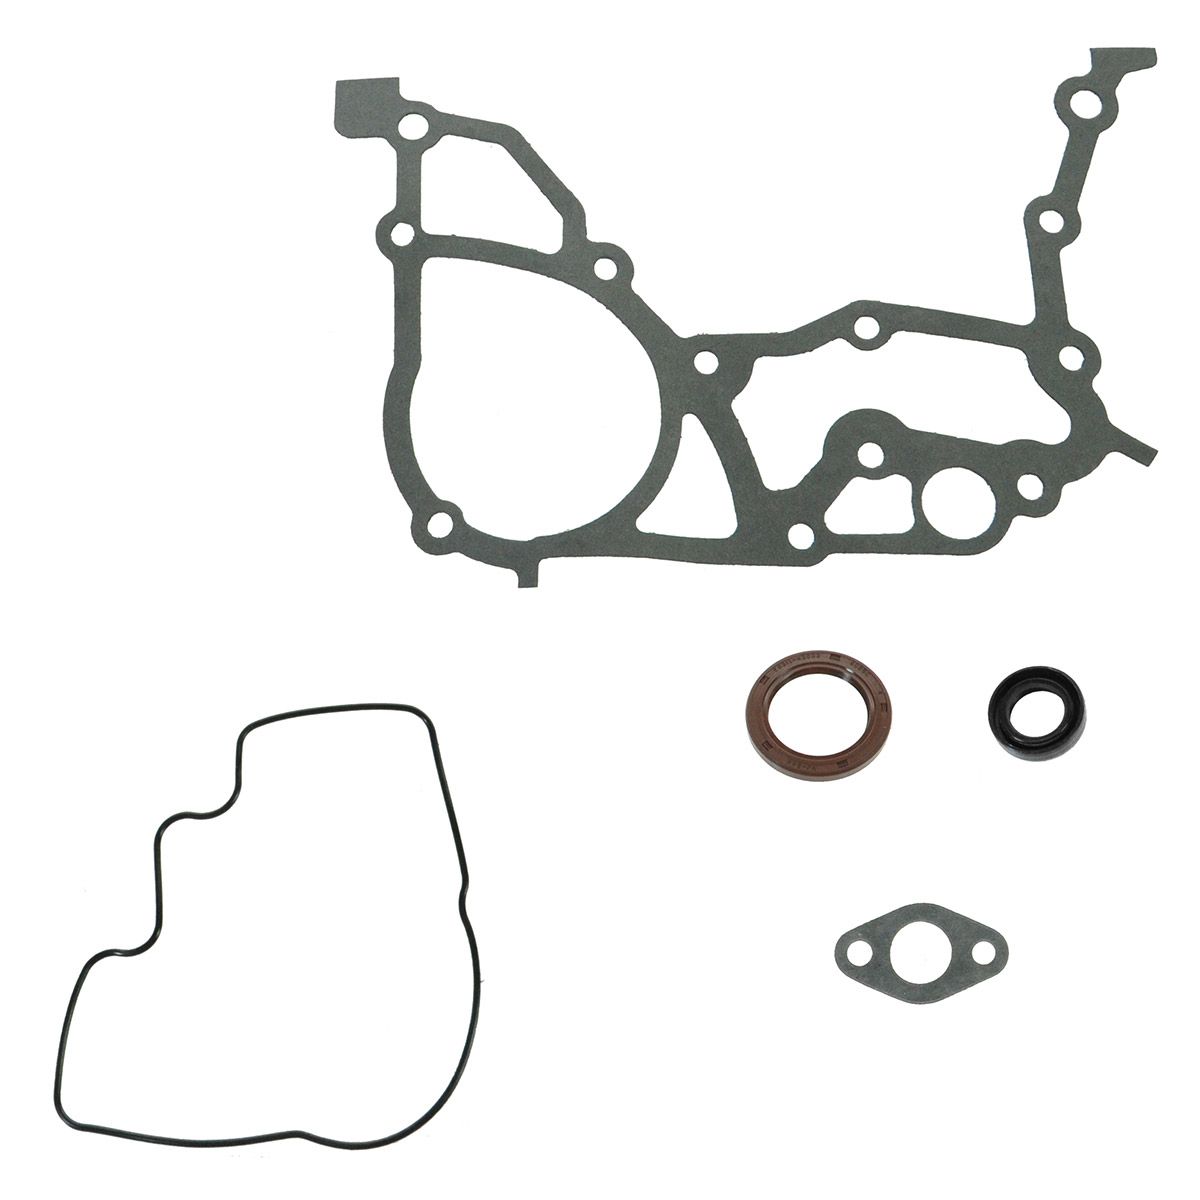 FELPRO Crankshaft Seal Kit Set for Toyota Camry Celica MR-2 MR2 Rav4 ...